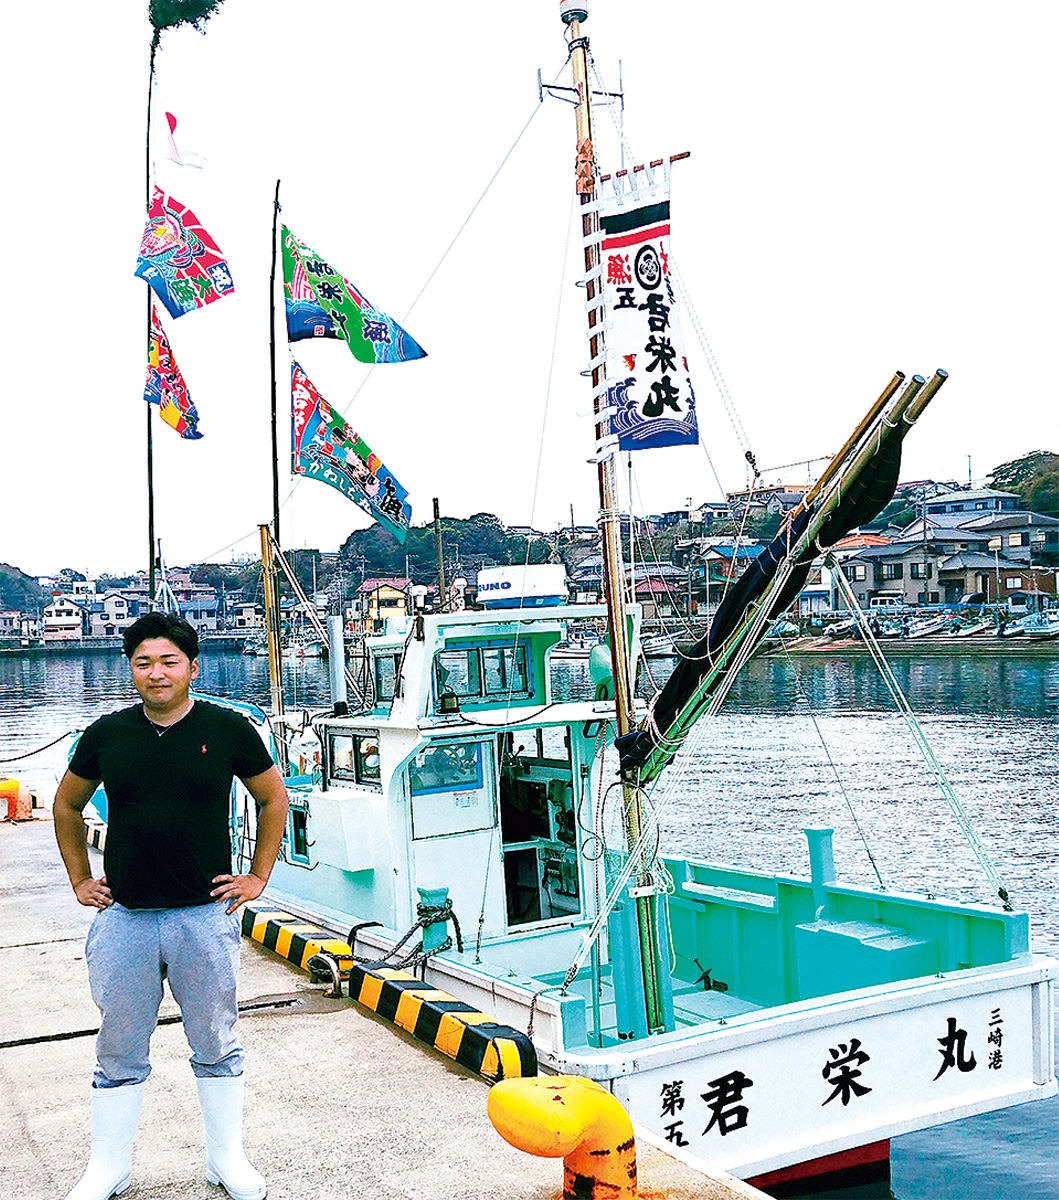 晴海町・宮川樹さん 若き力で漁業に元気を 後進の育成にも意欲